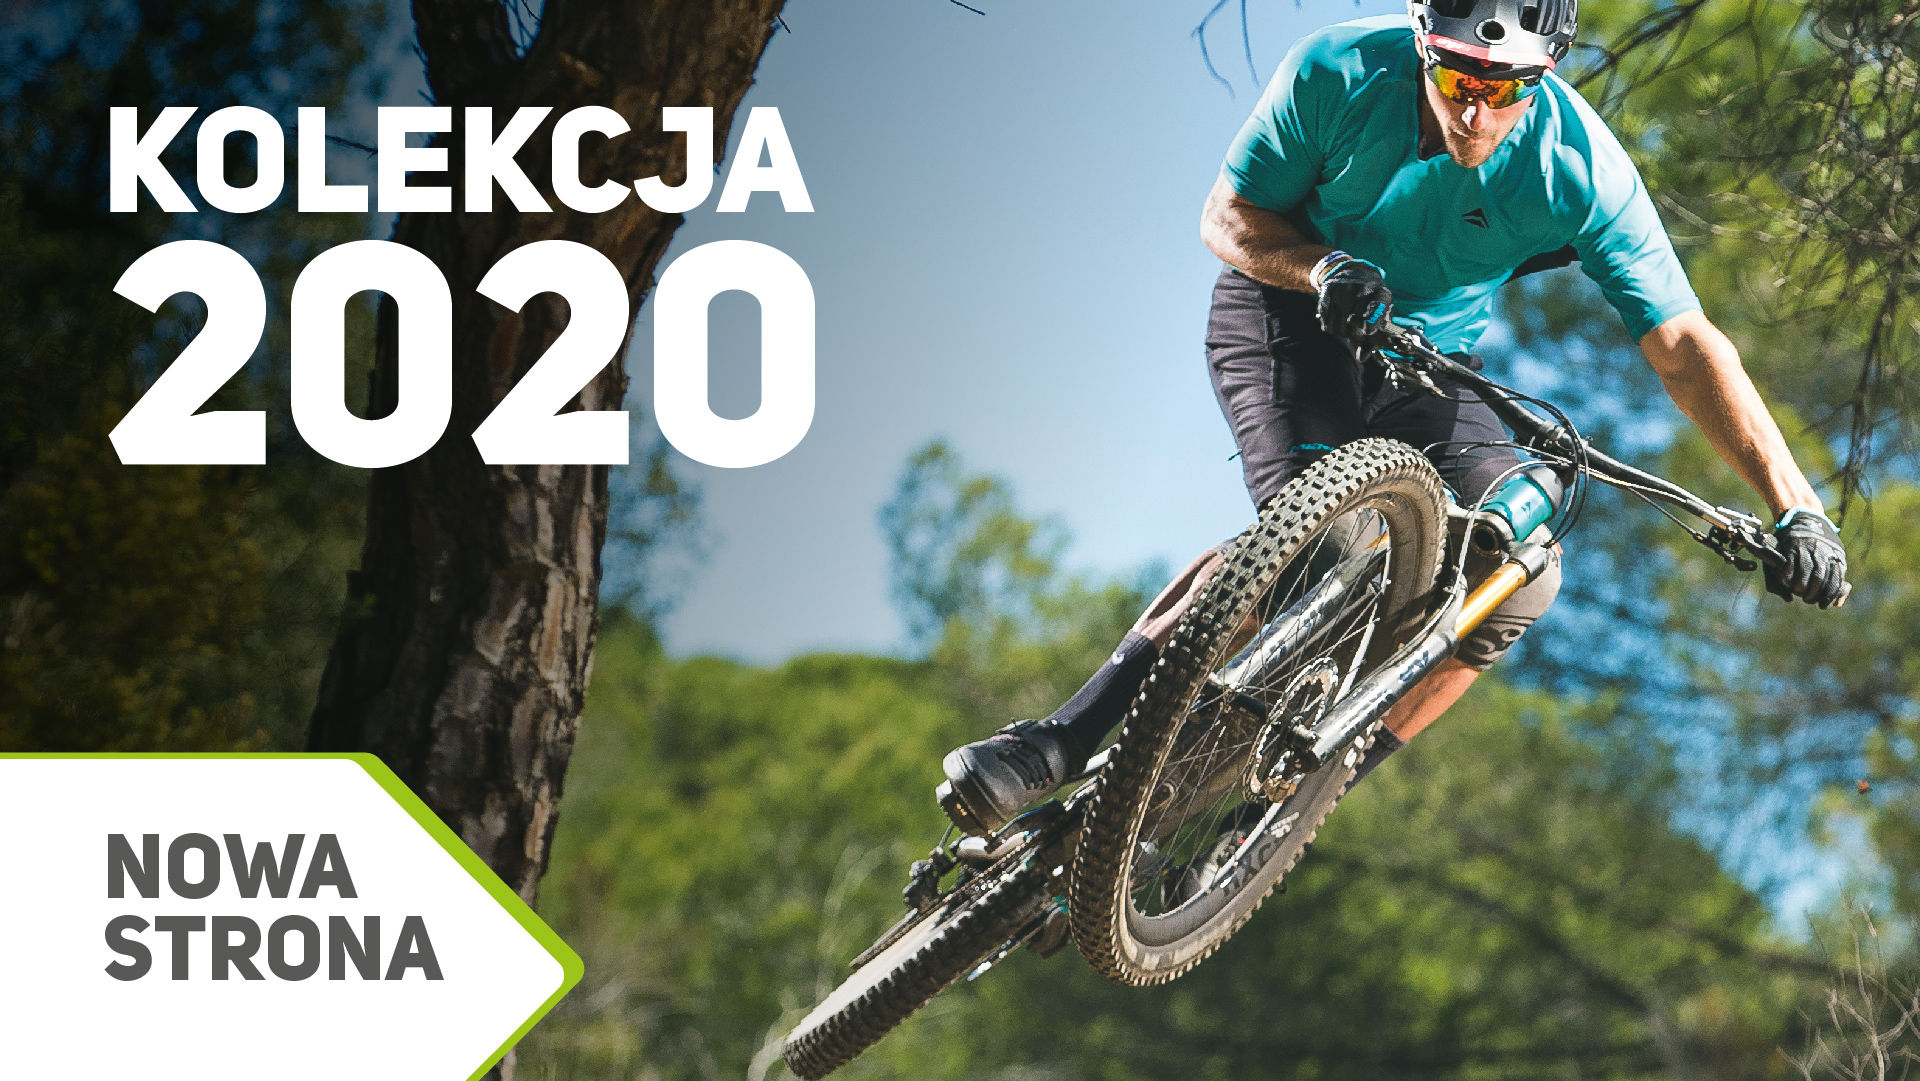 rowery Merida 2020, Merida bikes, Merida kolekcja 2020